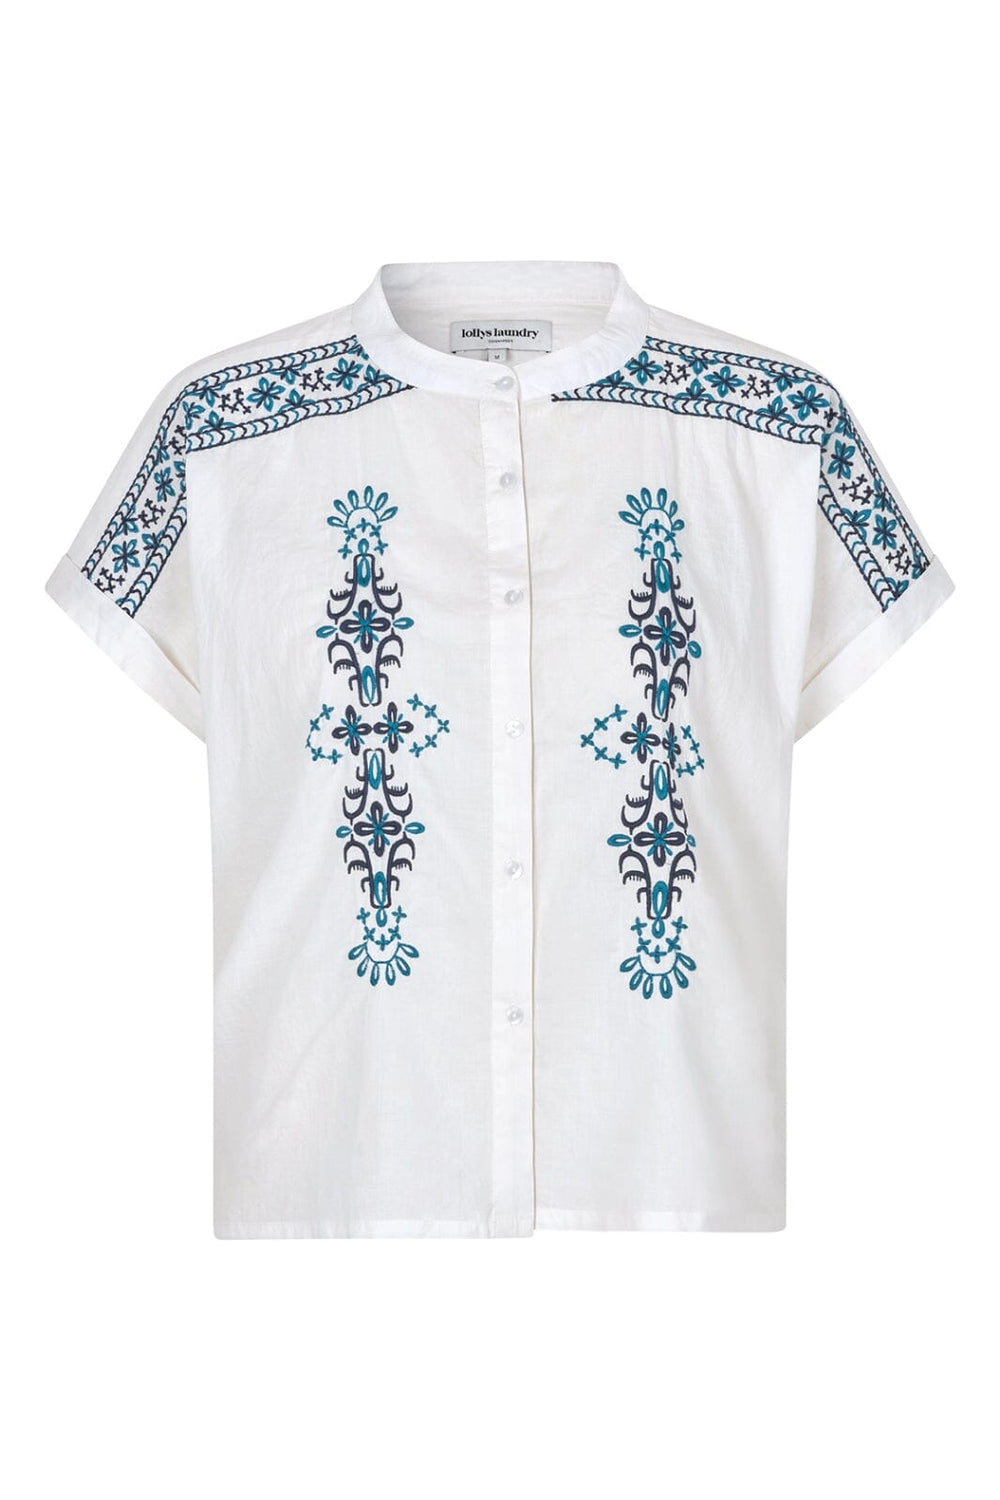 Lollys Laundry - MyaLL Shirt SS 24297-1057 - 01 White Skjorter 